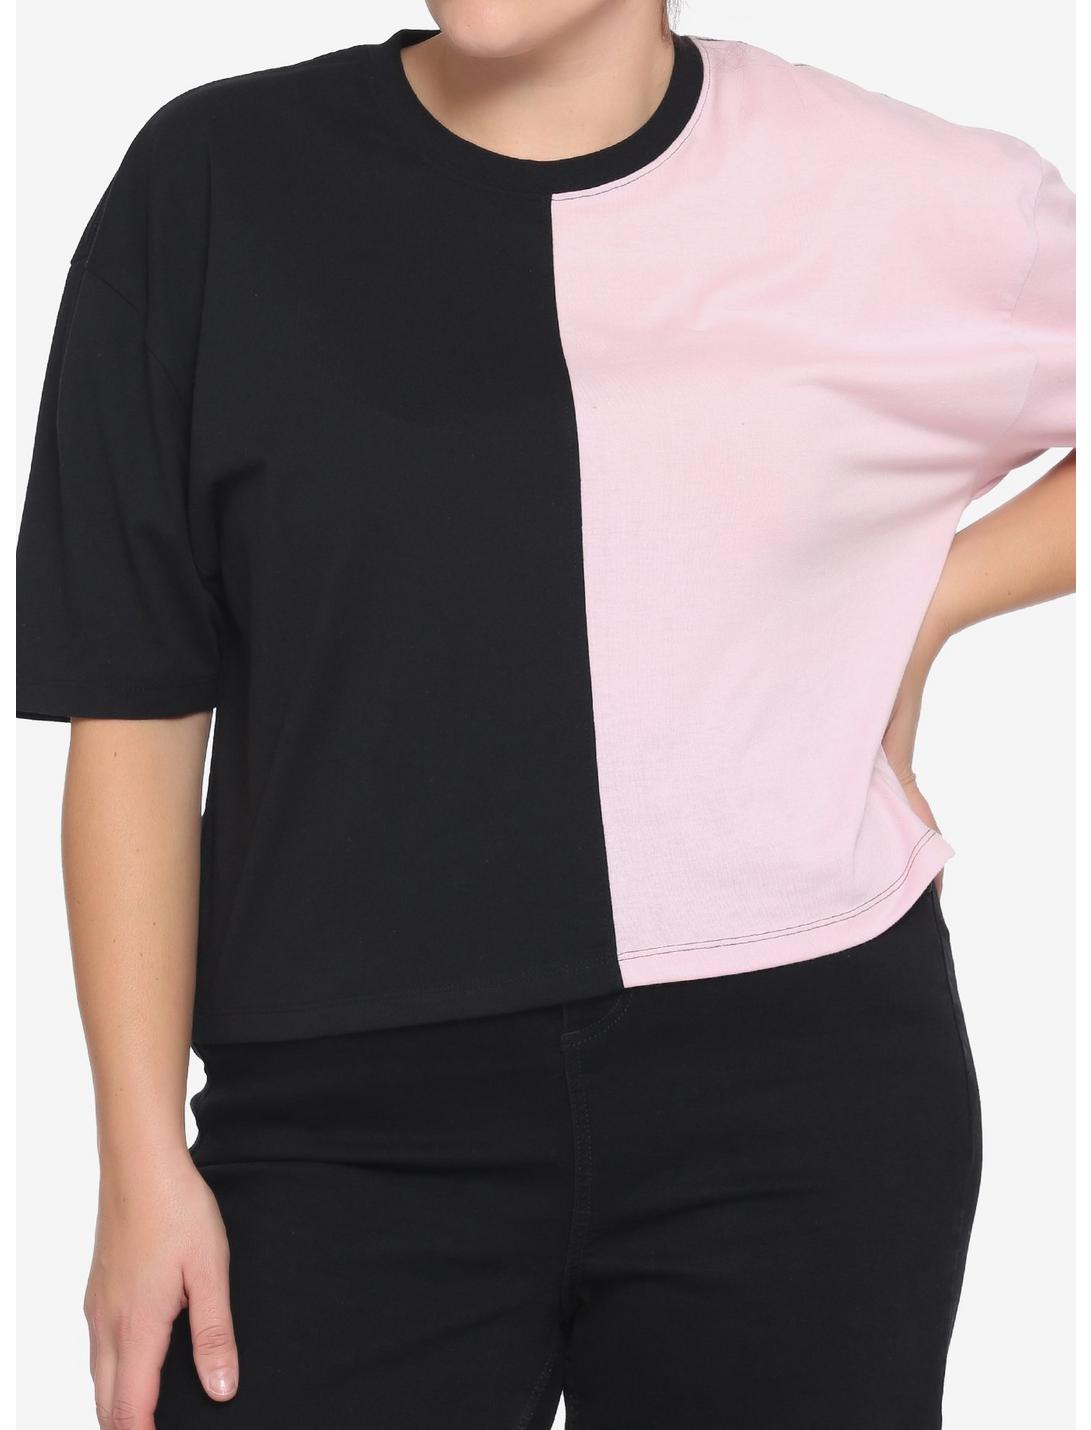 Pink & Black Girls Crop T-Shirt Plus Size, MULTI, hi-res